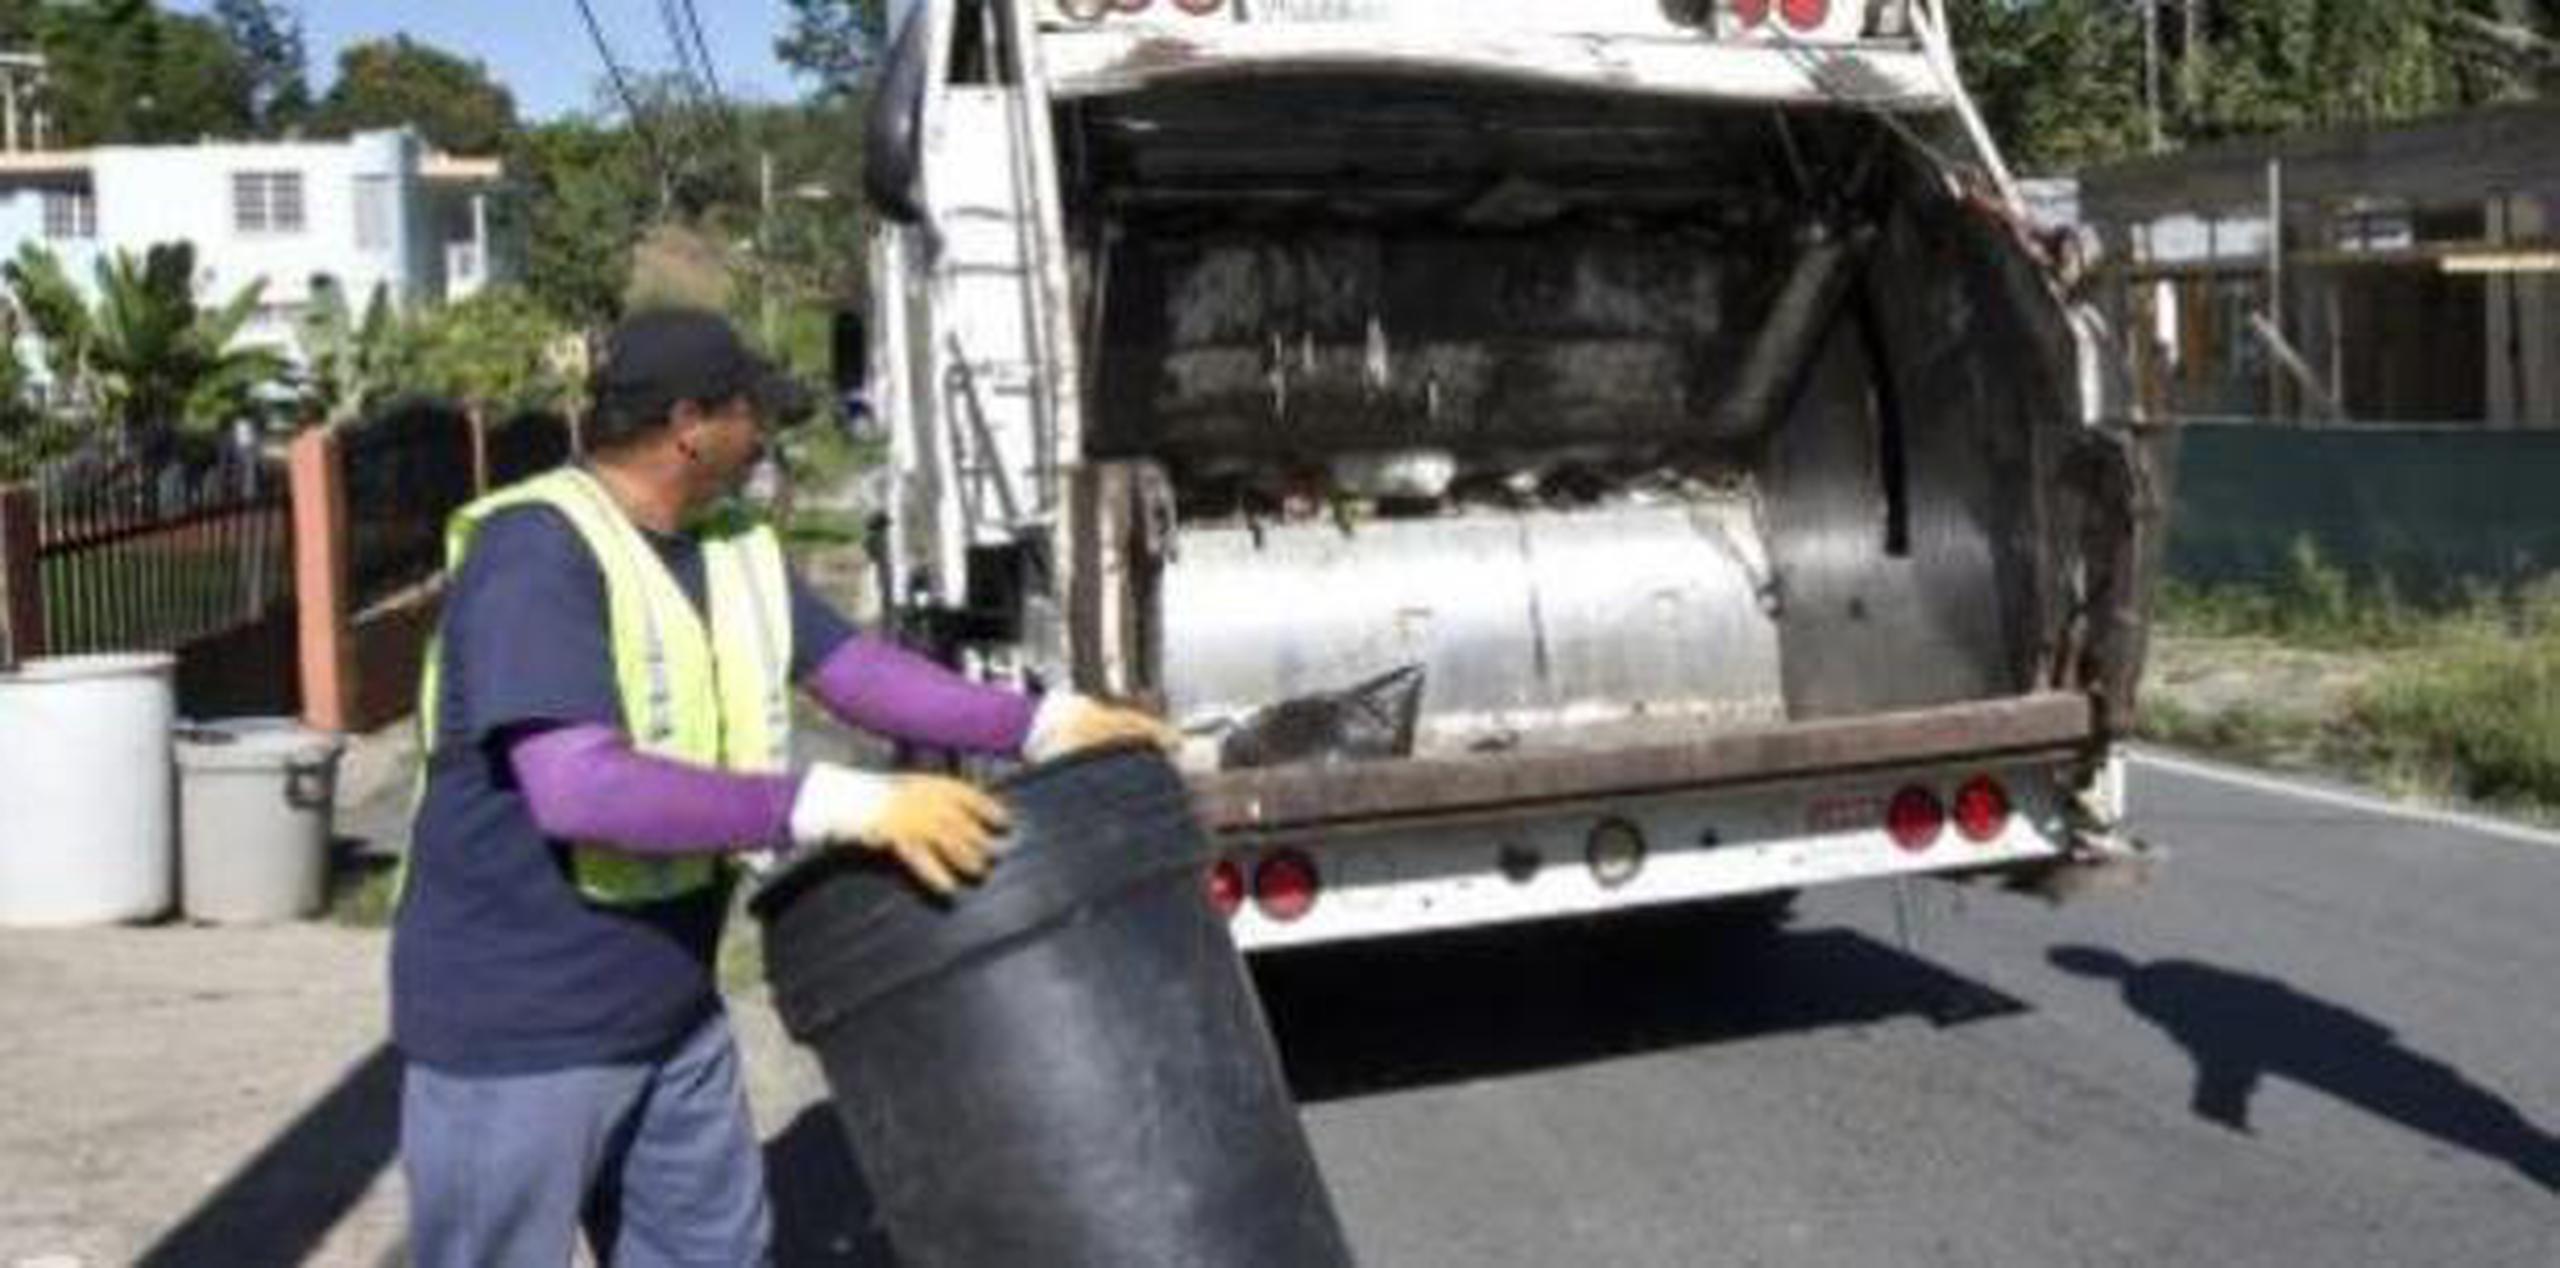 Cabo Rojo fue el primer municipio en anunciar el cobro por el recogido de basura. Su decisión levantó una ola de protestas de ciudadanos que fueron desde piquetes hasta la proliferación de vertederos clandestinos. (Archivo)